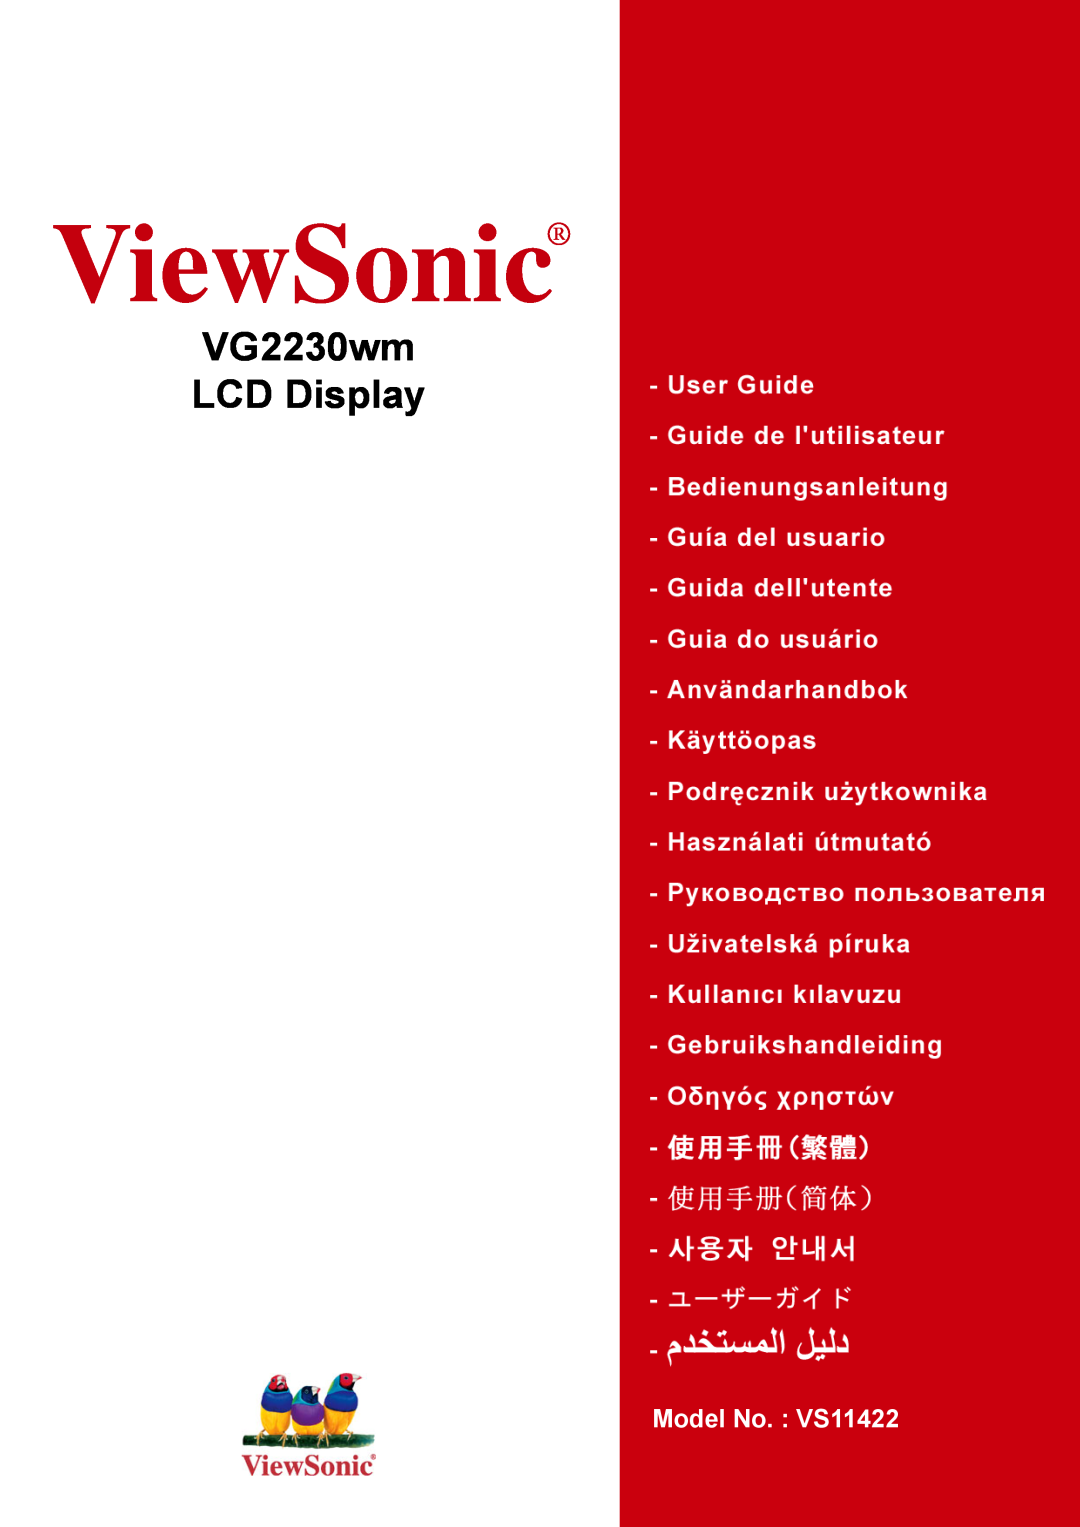 ViewSonic manual ViewSonic, VG2230wm LCD Display, Model No. VS11422 